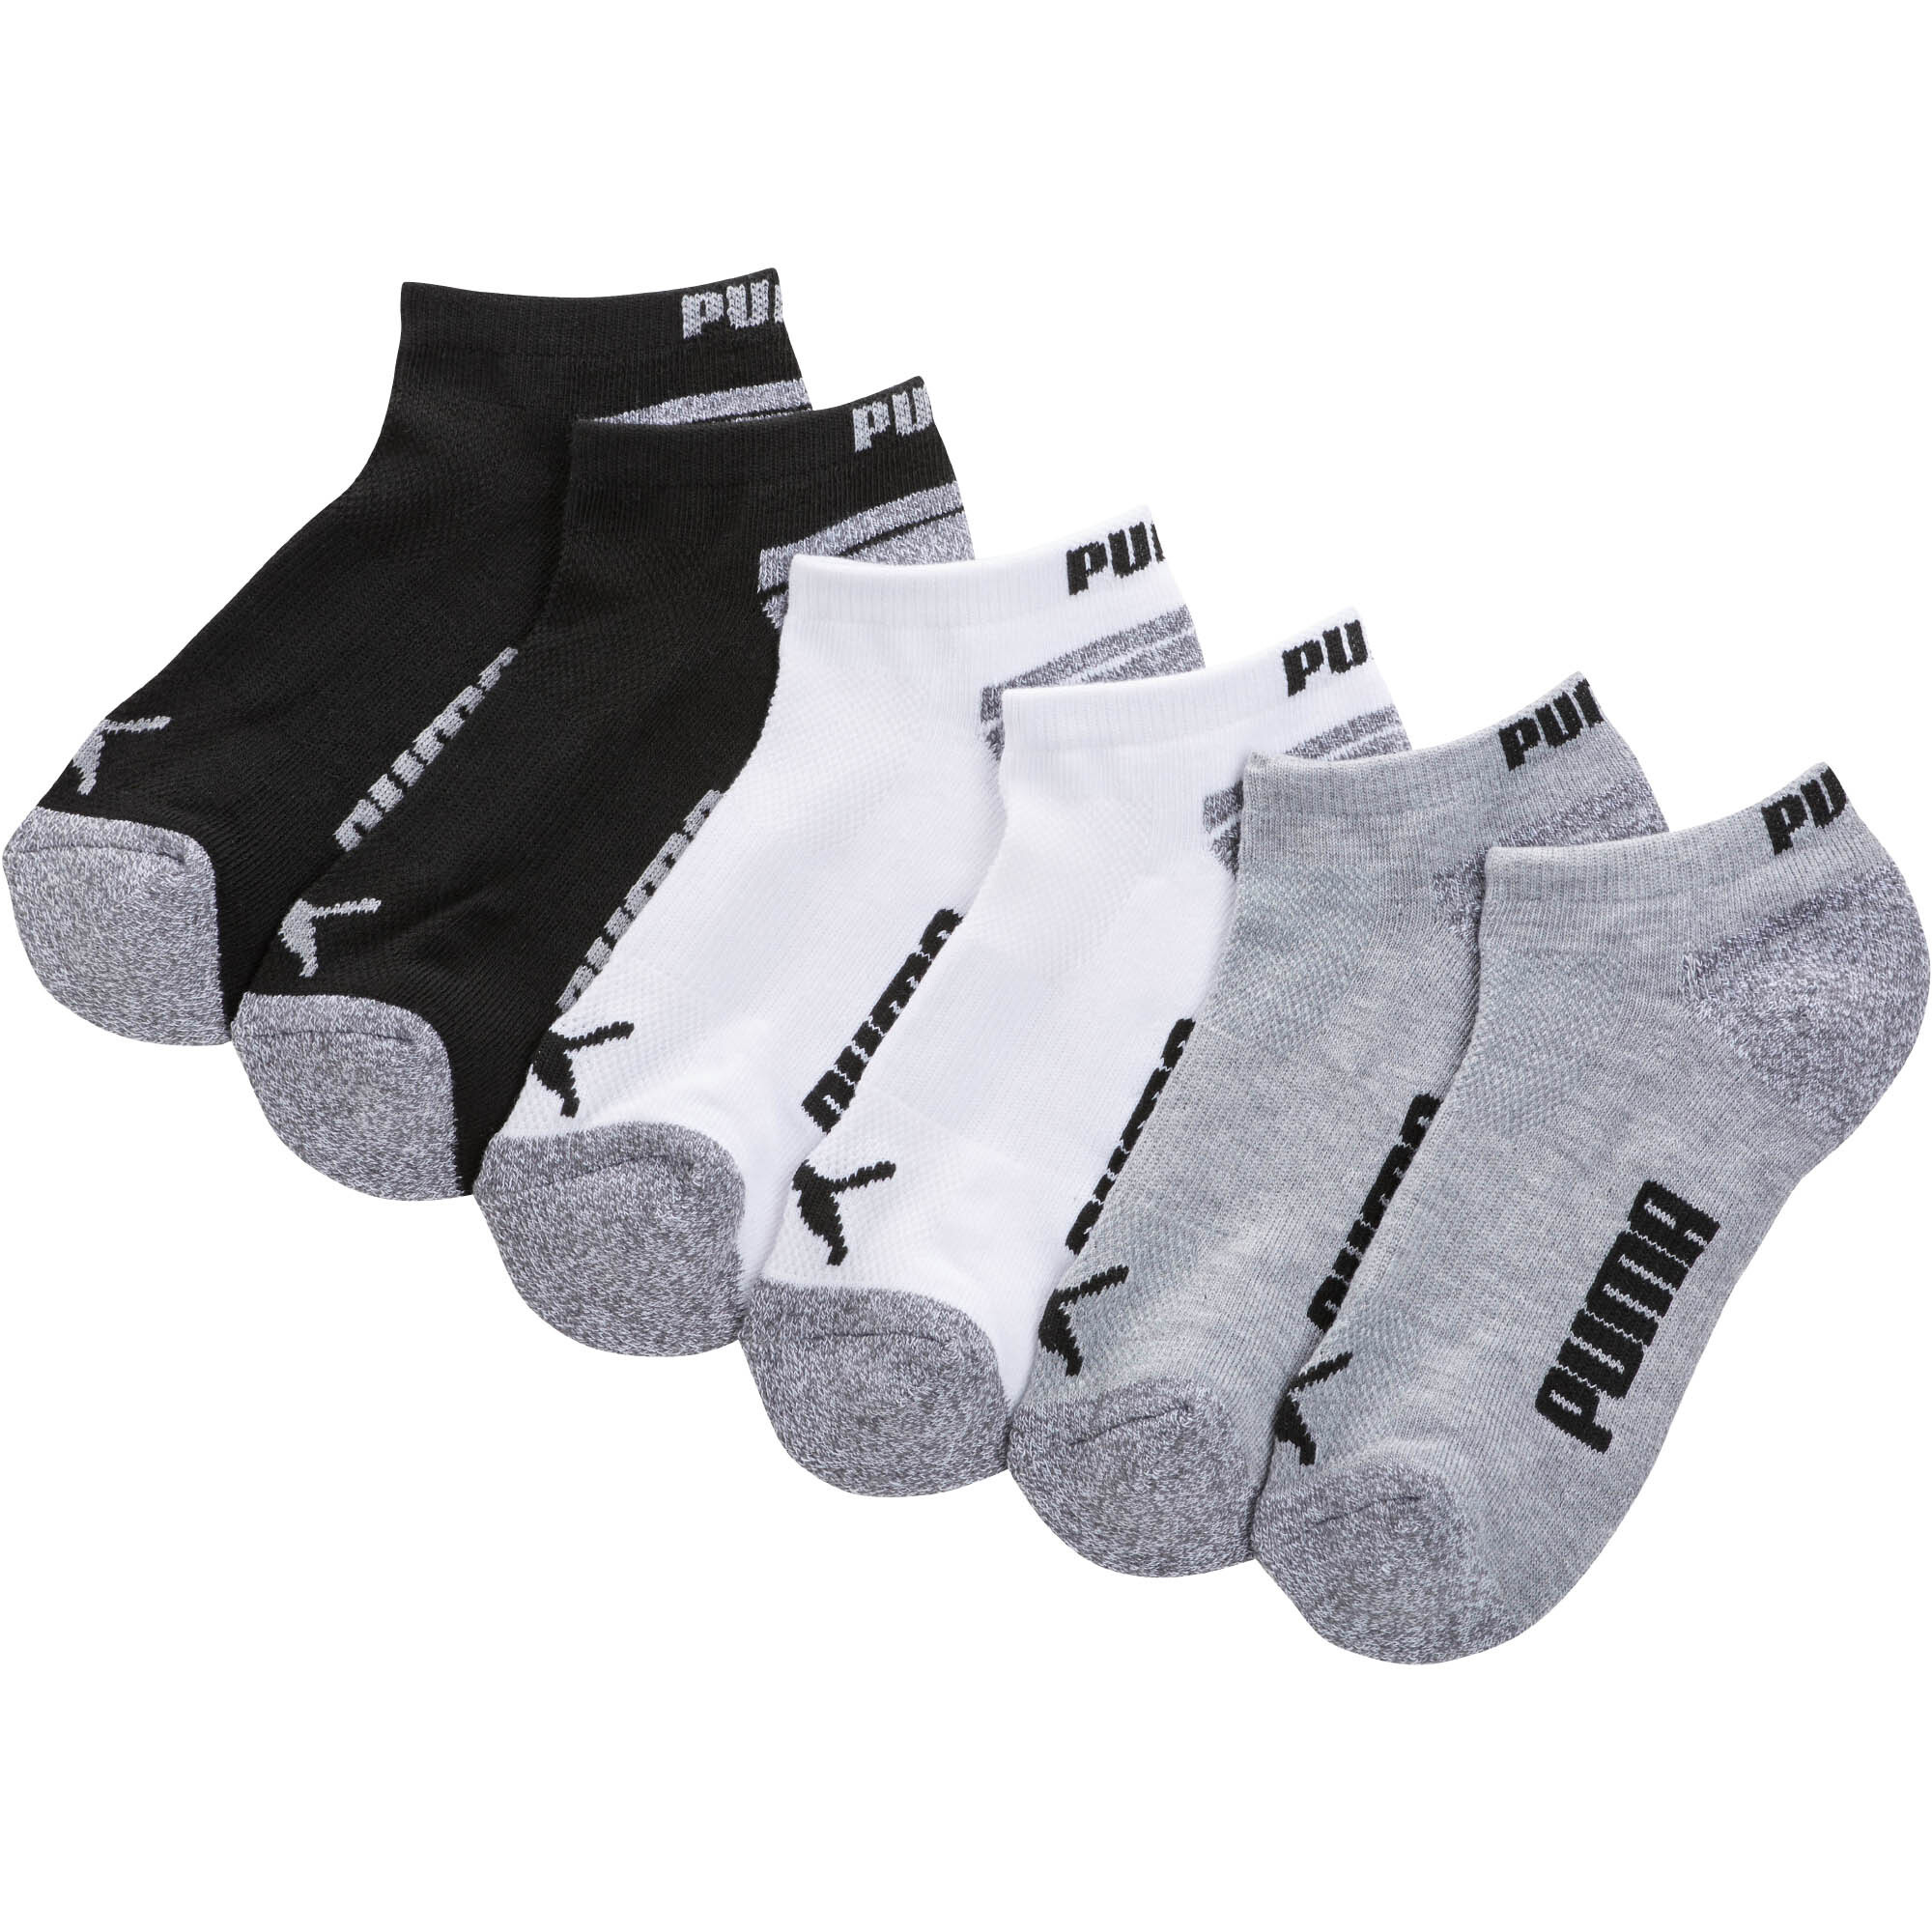 PUMA Terry Low Cut Socks [6 Pack] | eBay